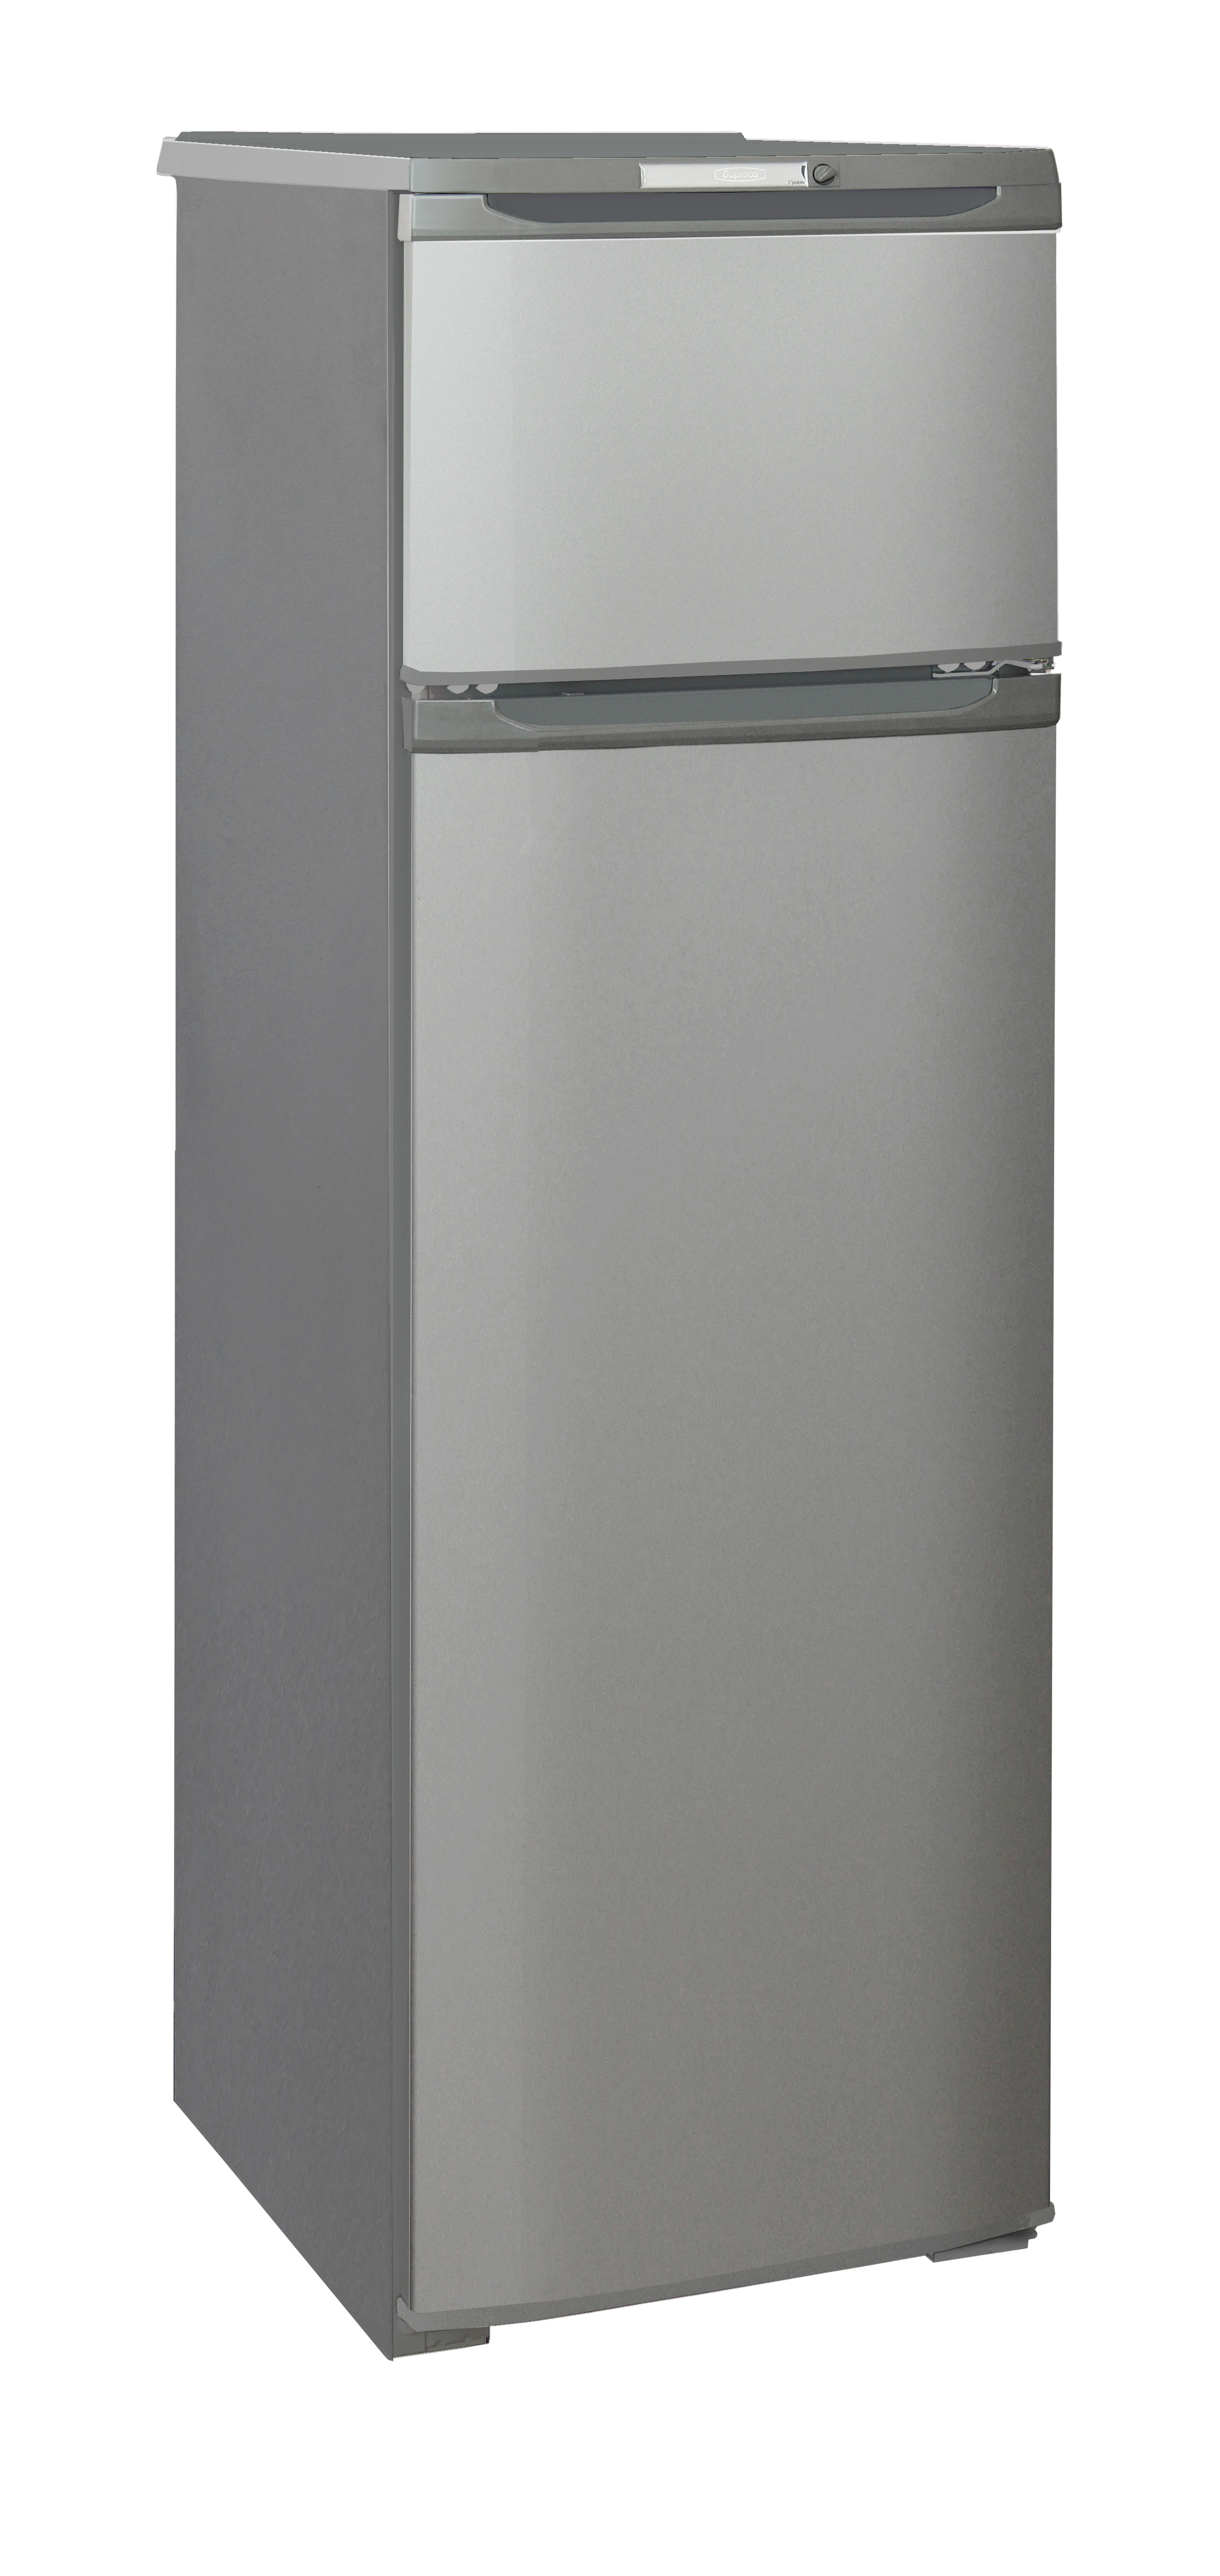 Двухкамерный холодильник БИРЮСА M 124																		 — описание, фото, цены в интернет-магазине Премьер Техно